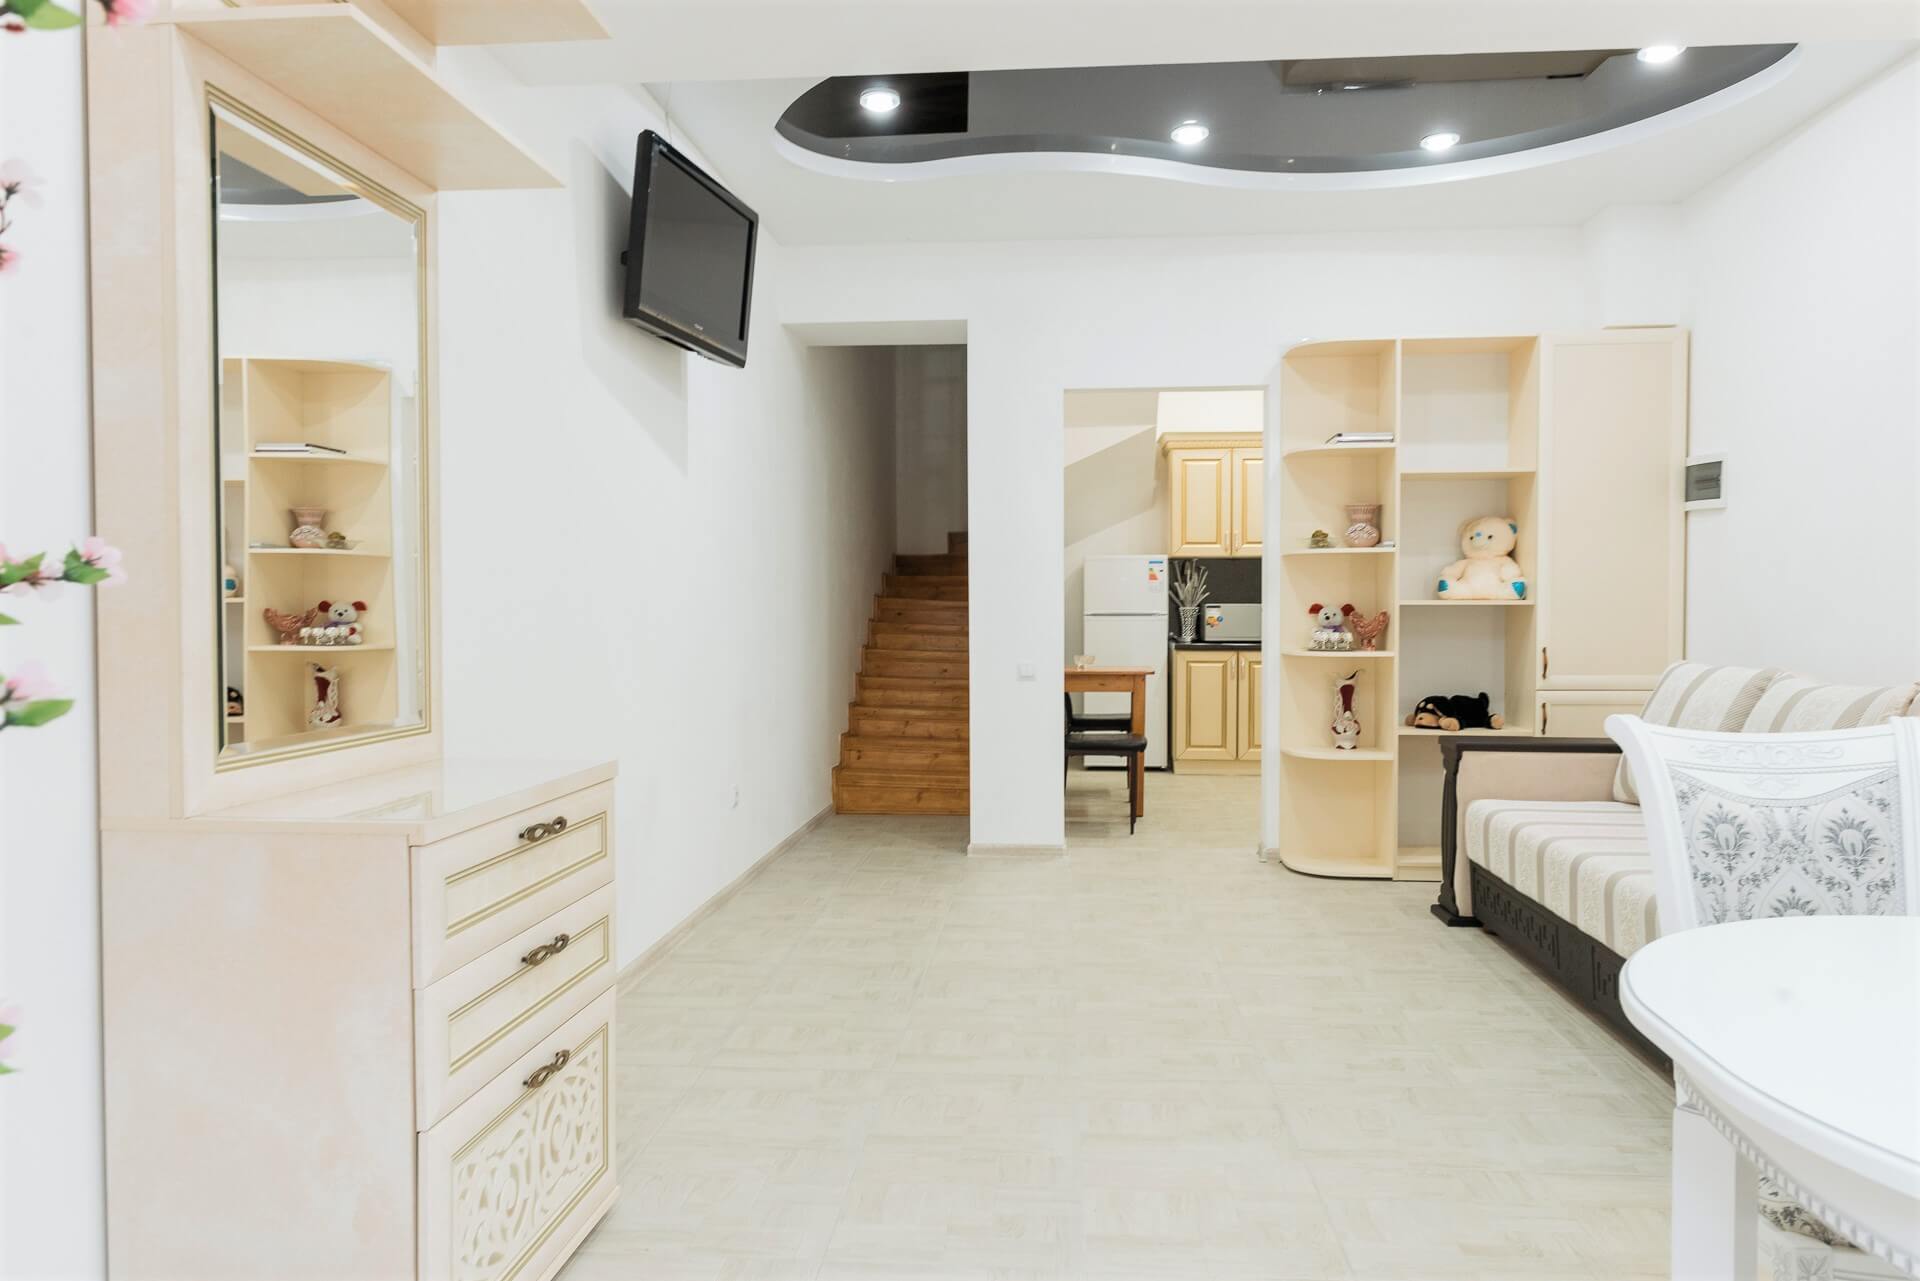 Двухкомнатная квартира на ул.Свирская 22 (85кв.м) до 7 гостей